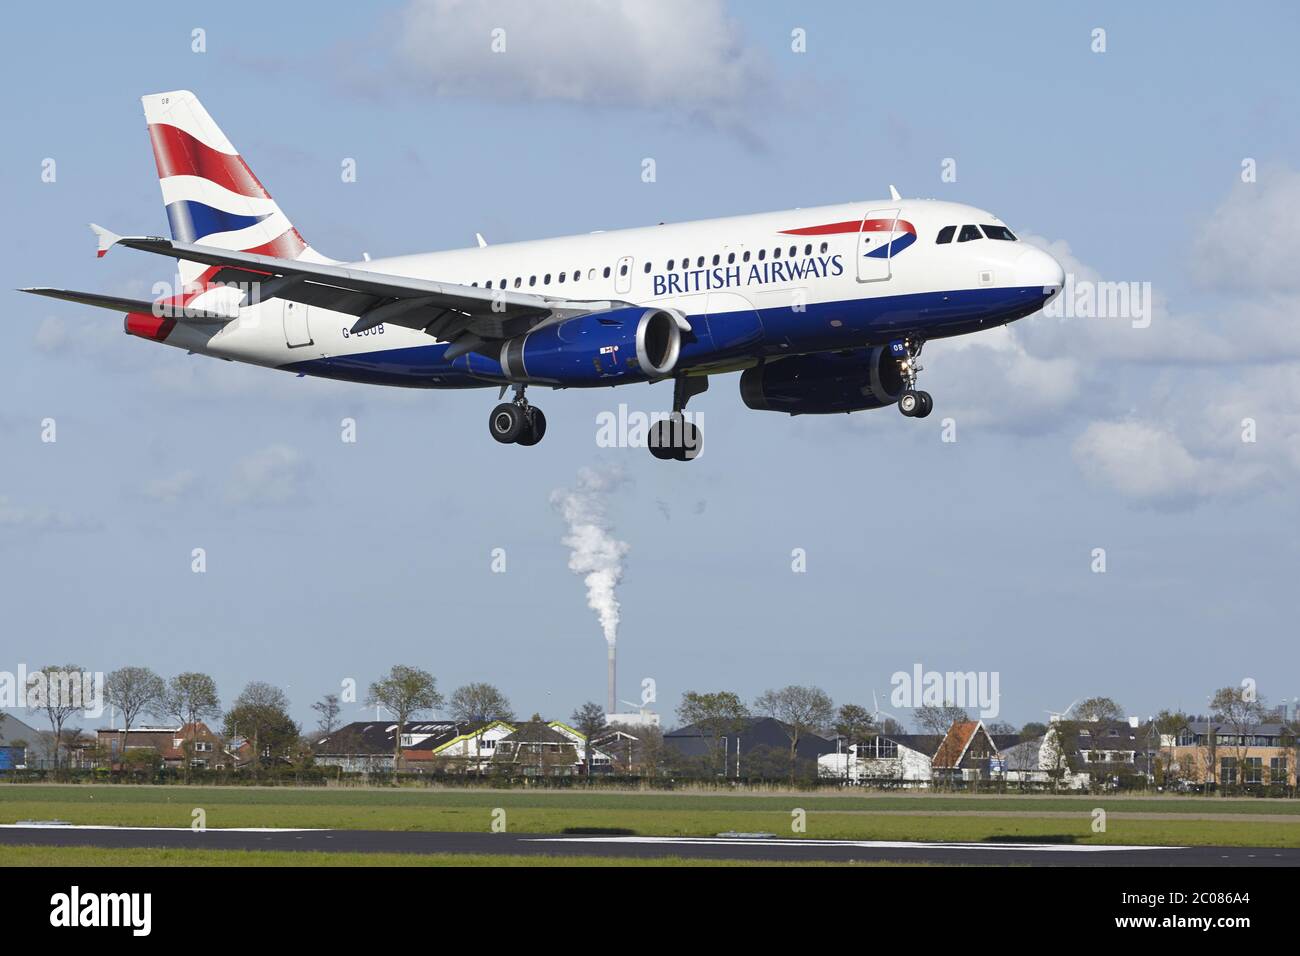 Aeroporto Schiphol di Amsterdam - Airbus A319 della British Airways atterra Foto Stock